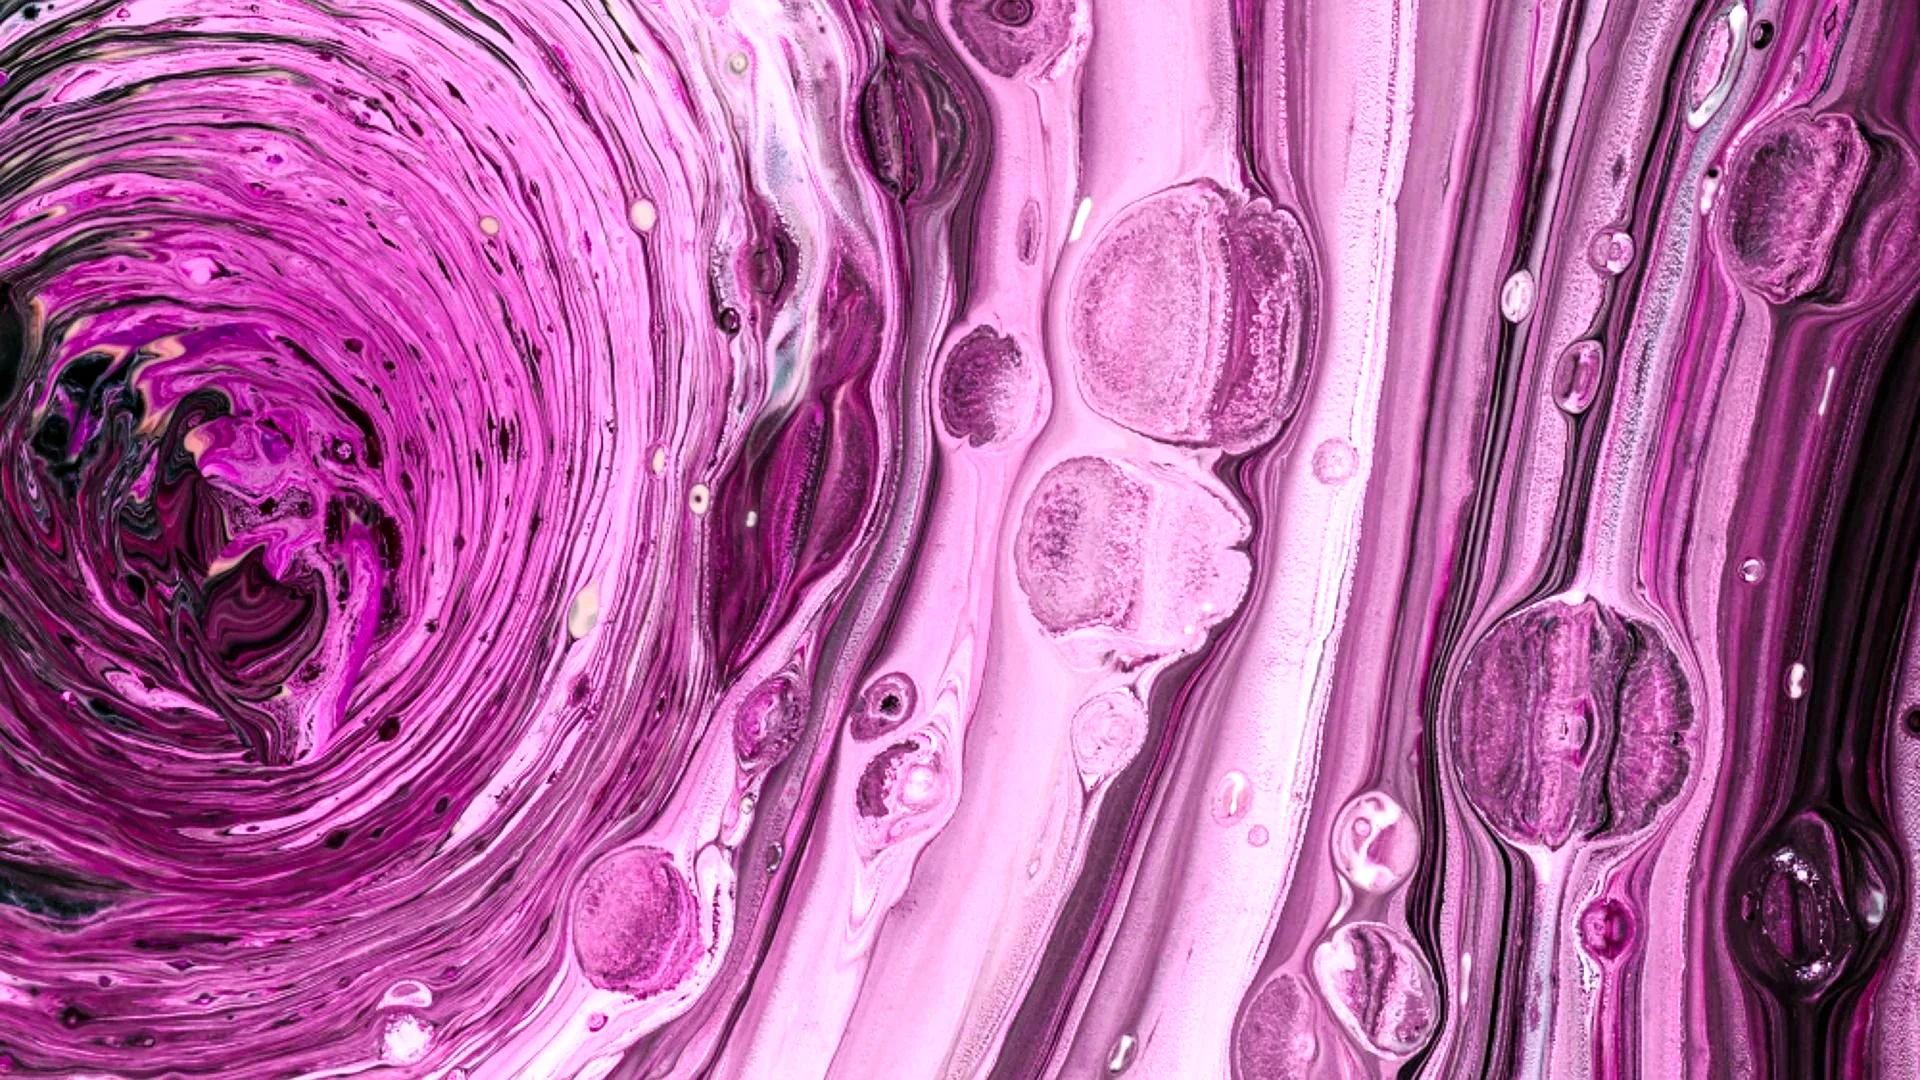 Фиолетовая жидкость